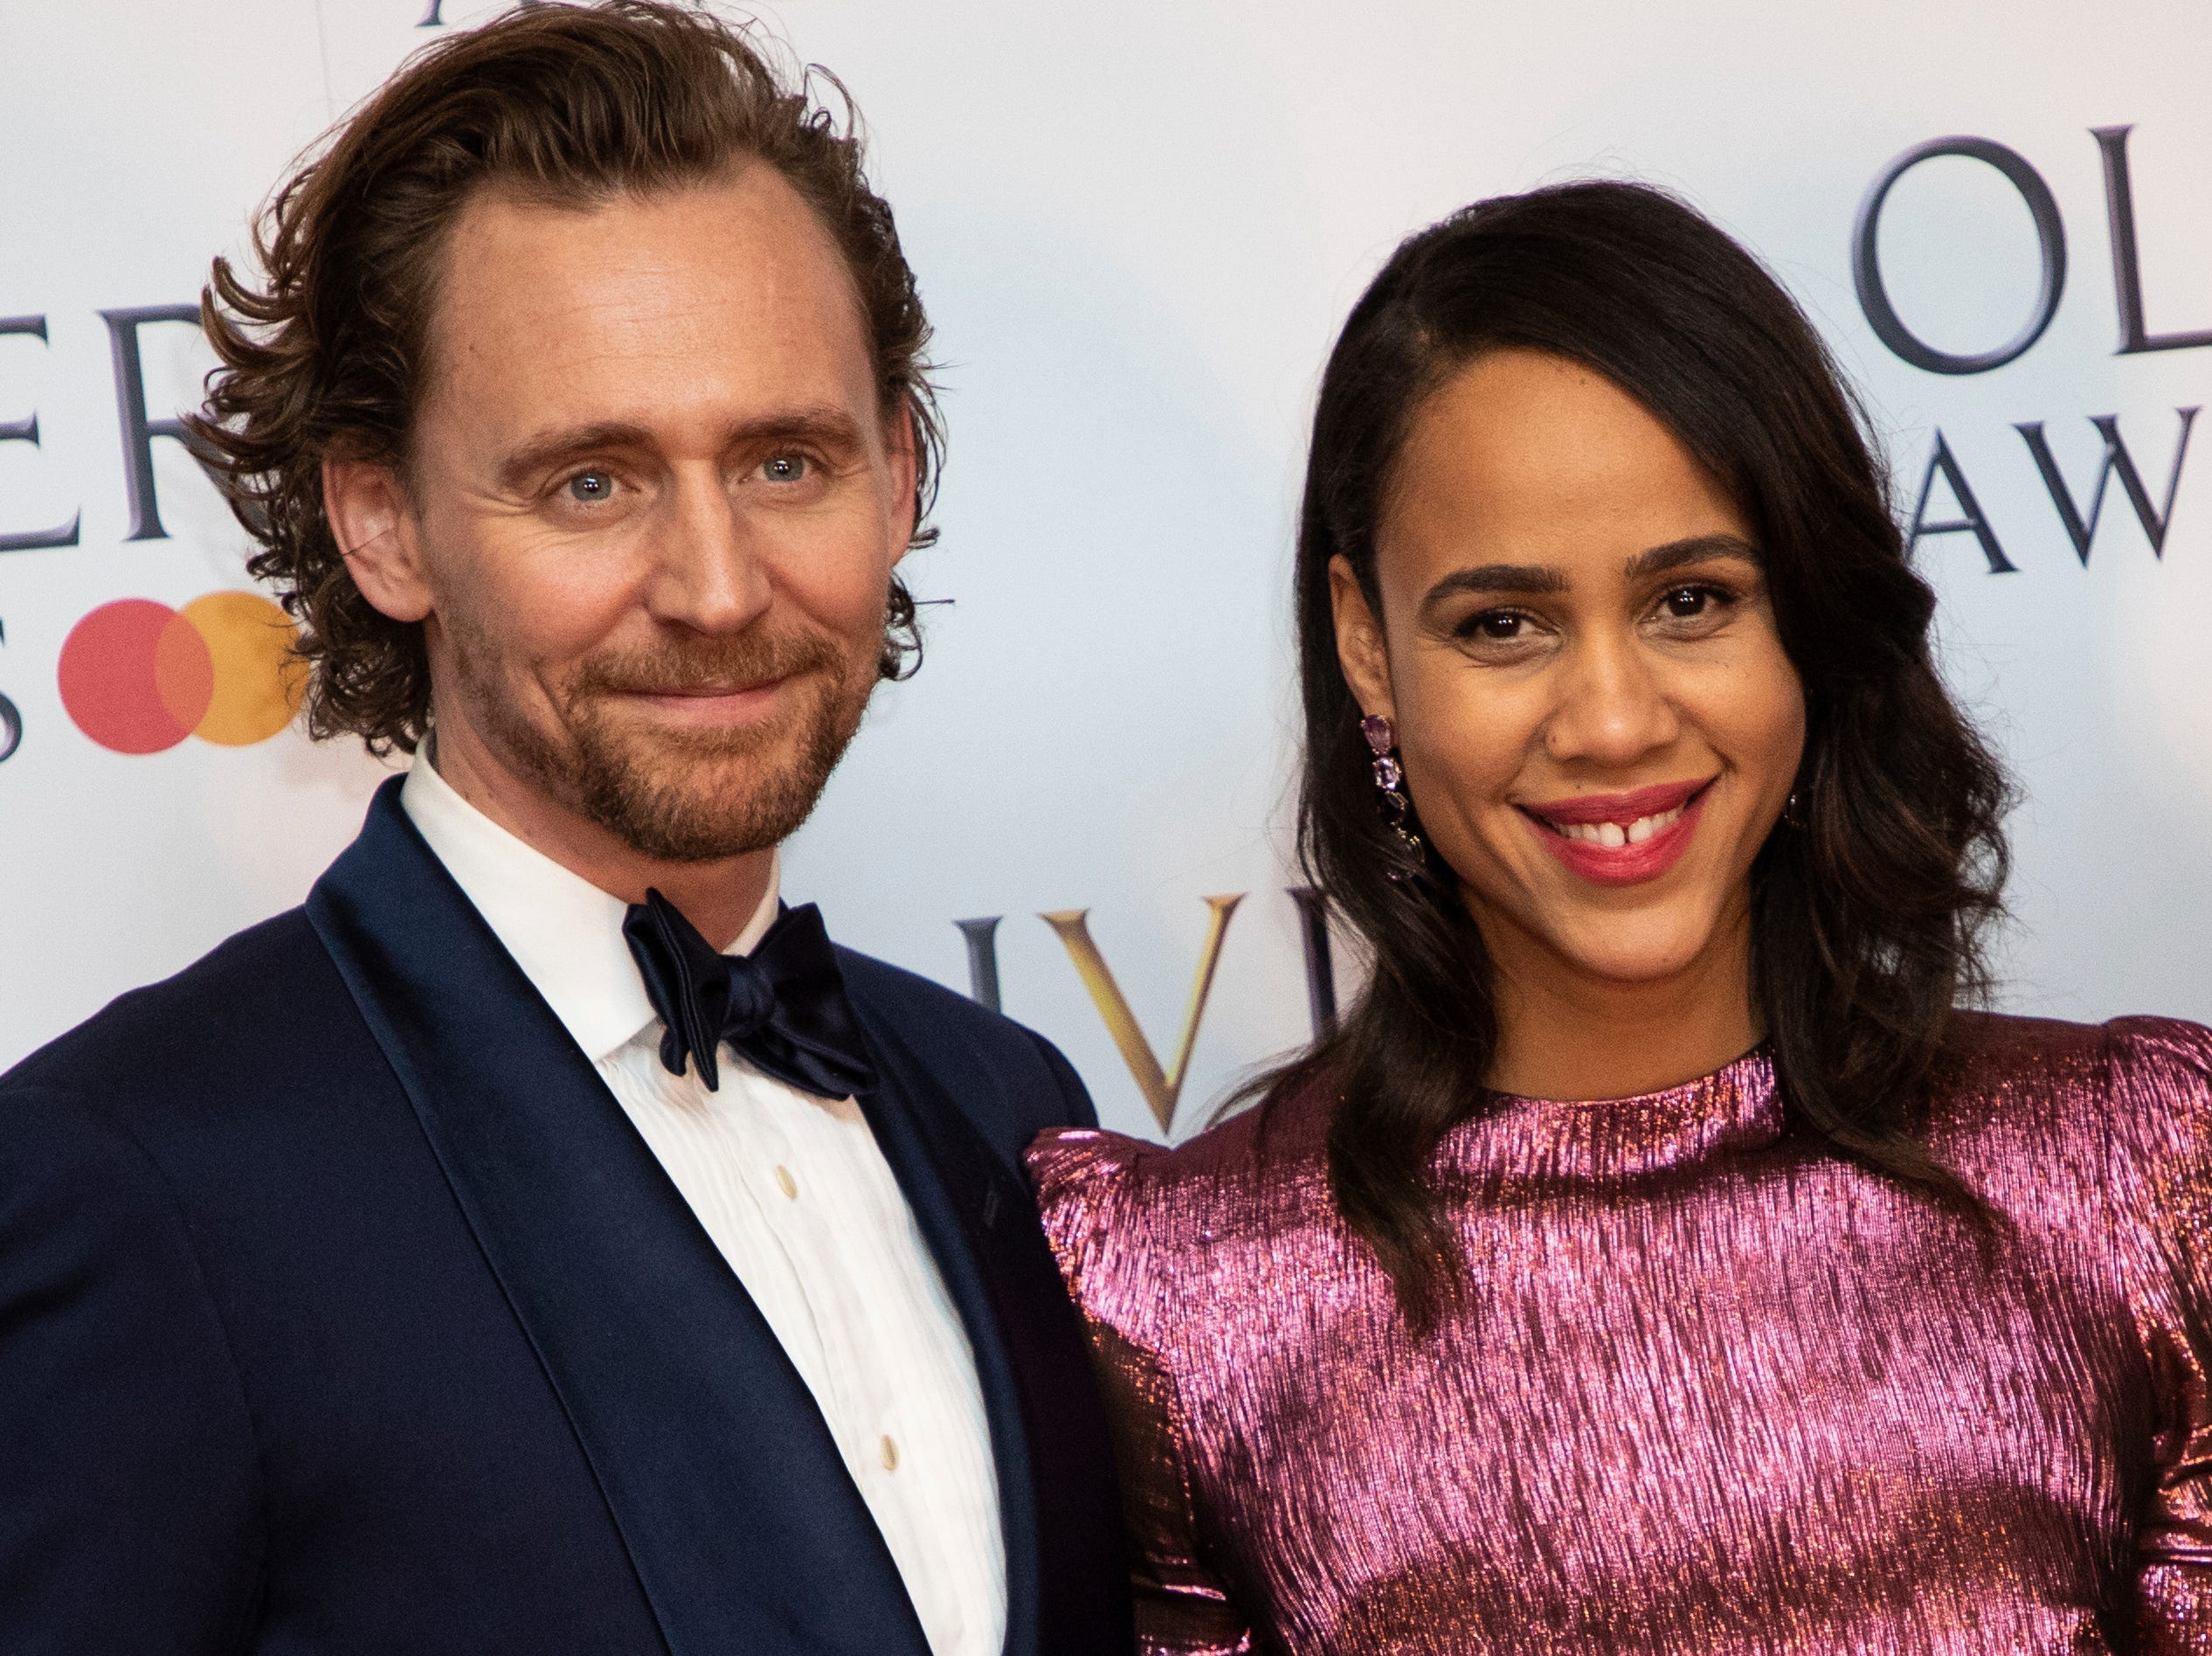 Tom Hiddleston und Zawe Ashton posieren für Fotografen hinter der Bühne bei den Olivier Awards in London, Sonntag, 7. April 2019.